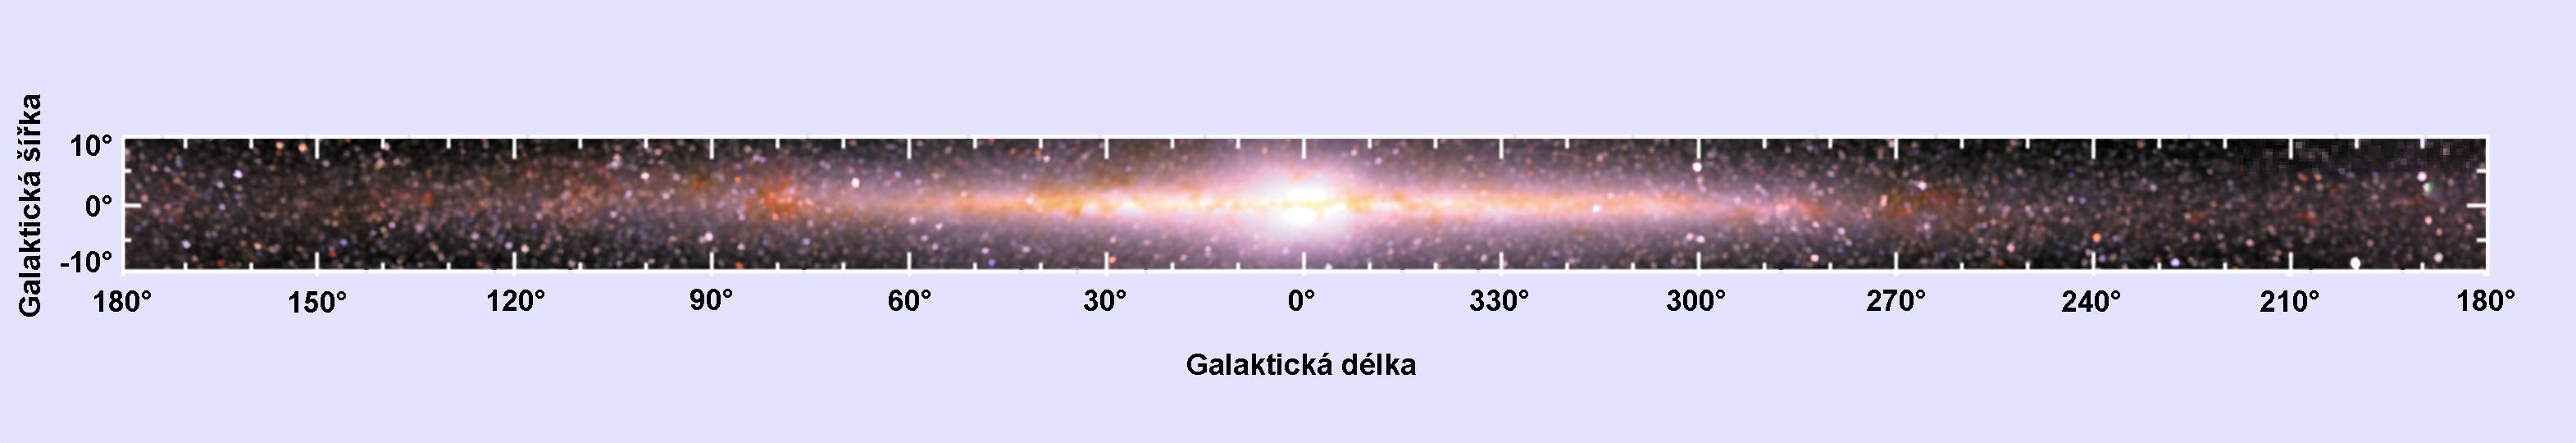 Blízké infračervené spektrum. Kliknutím se zobrazí popis některých oblastí.